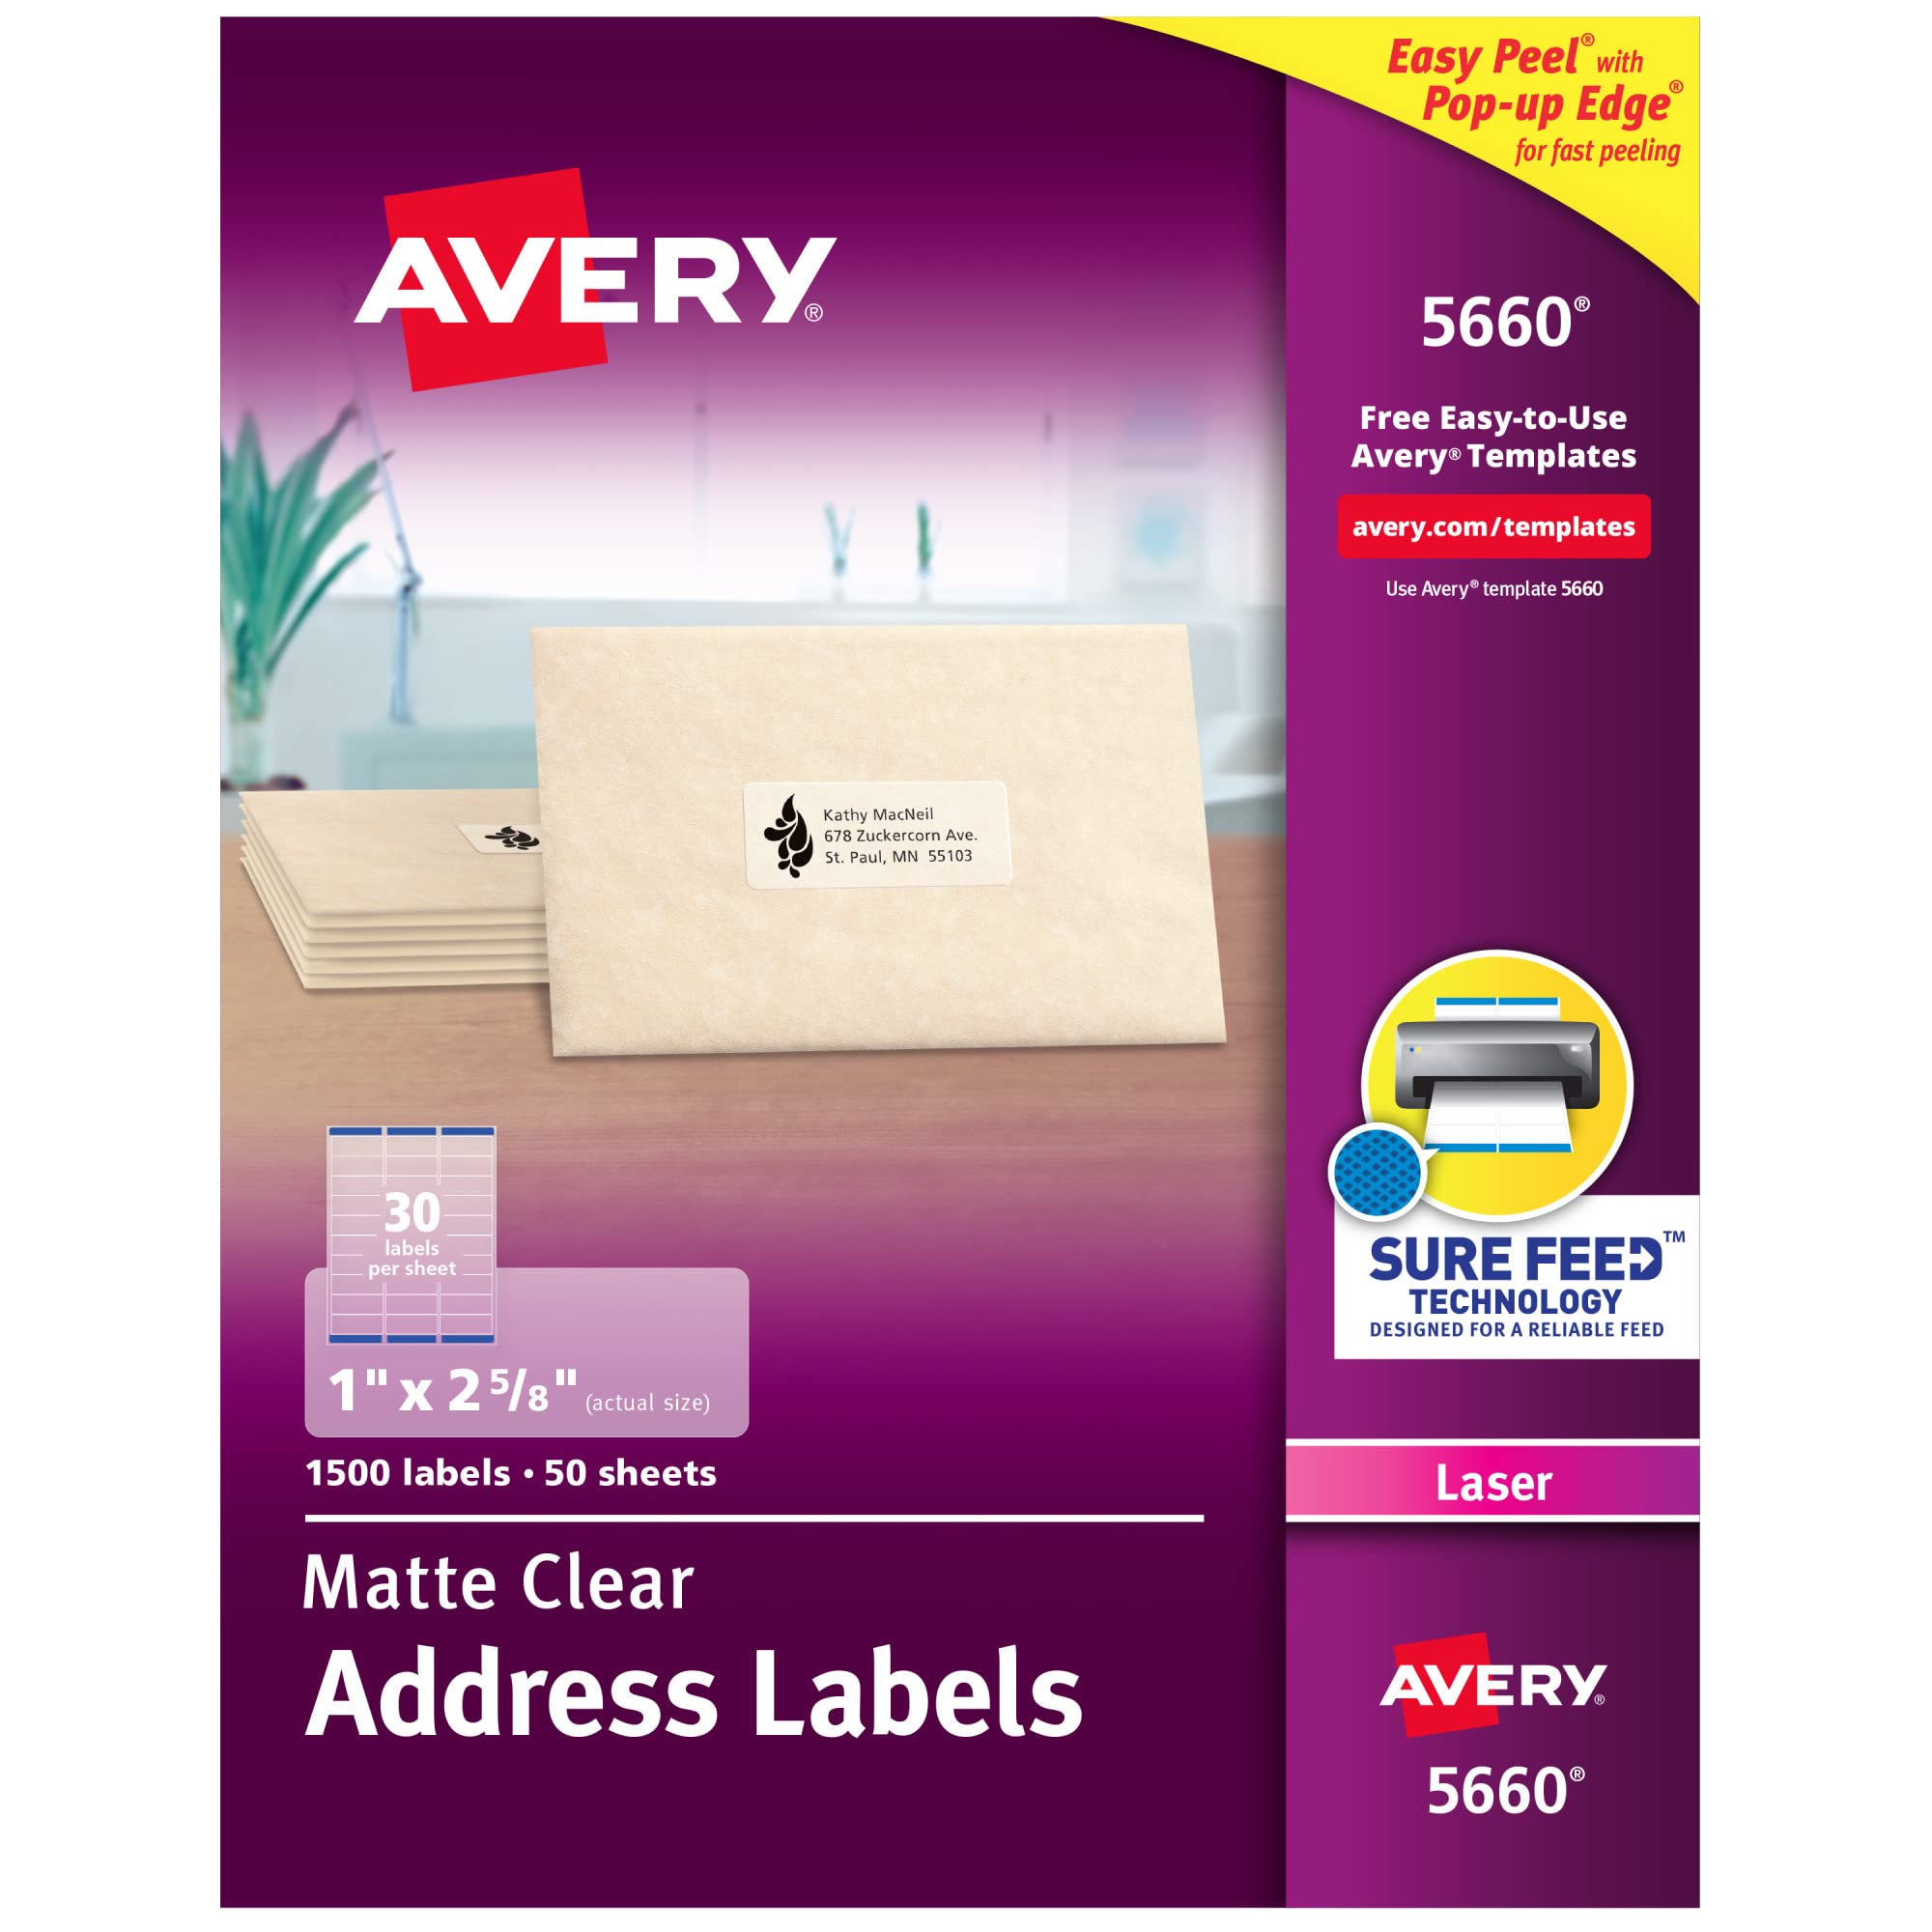 Avery レーザープリンター用のクリアイージーピールアドレスラベル 1インチ x 2-5/8インチ